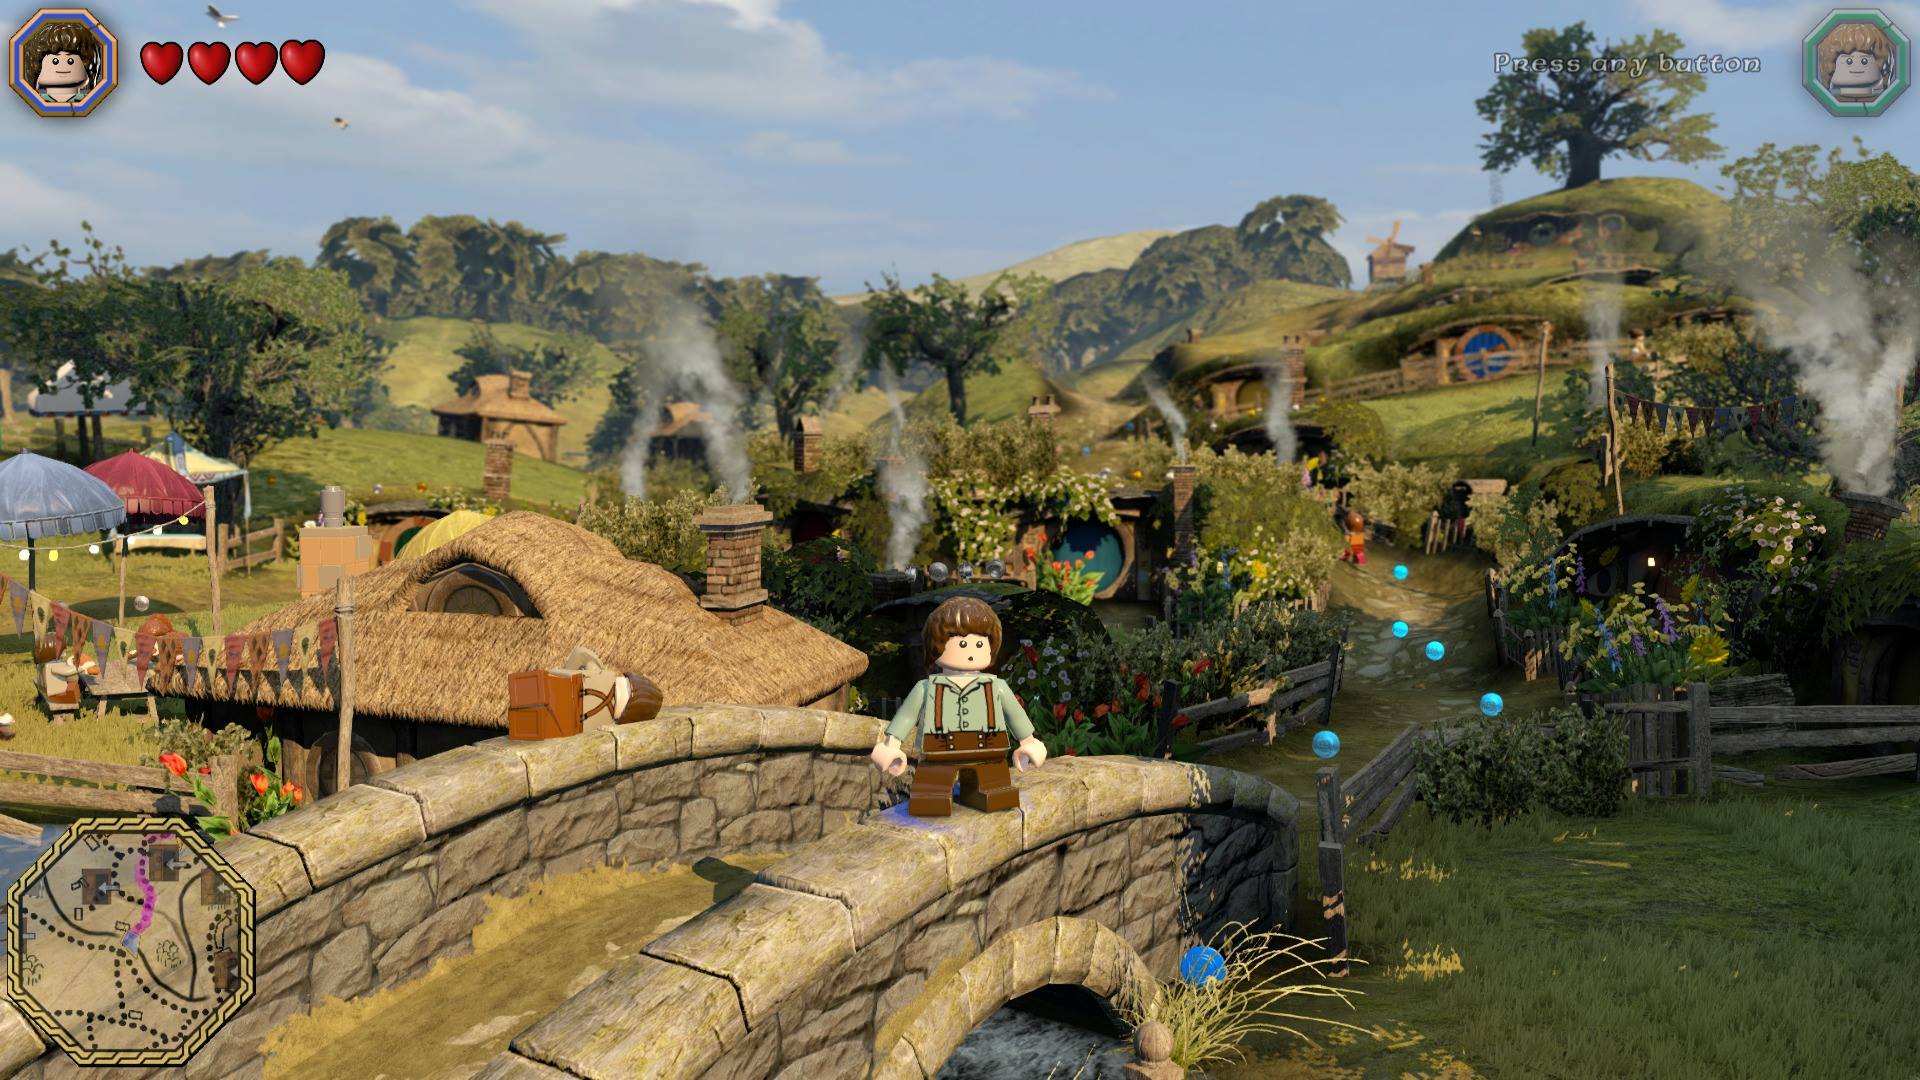 BH GAMES - A Mais Completa Loja de Games de Belo Horizonte - LEGO: The  Hobbit + Filme O Hobbit: Uma Jornada Inesperada - PS3